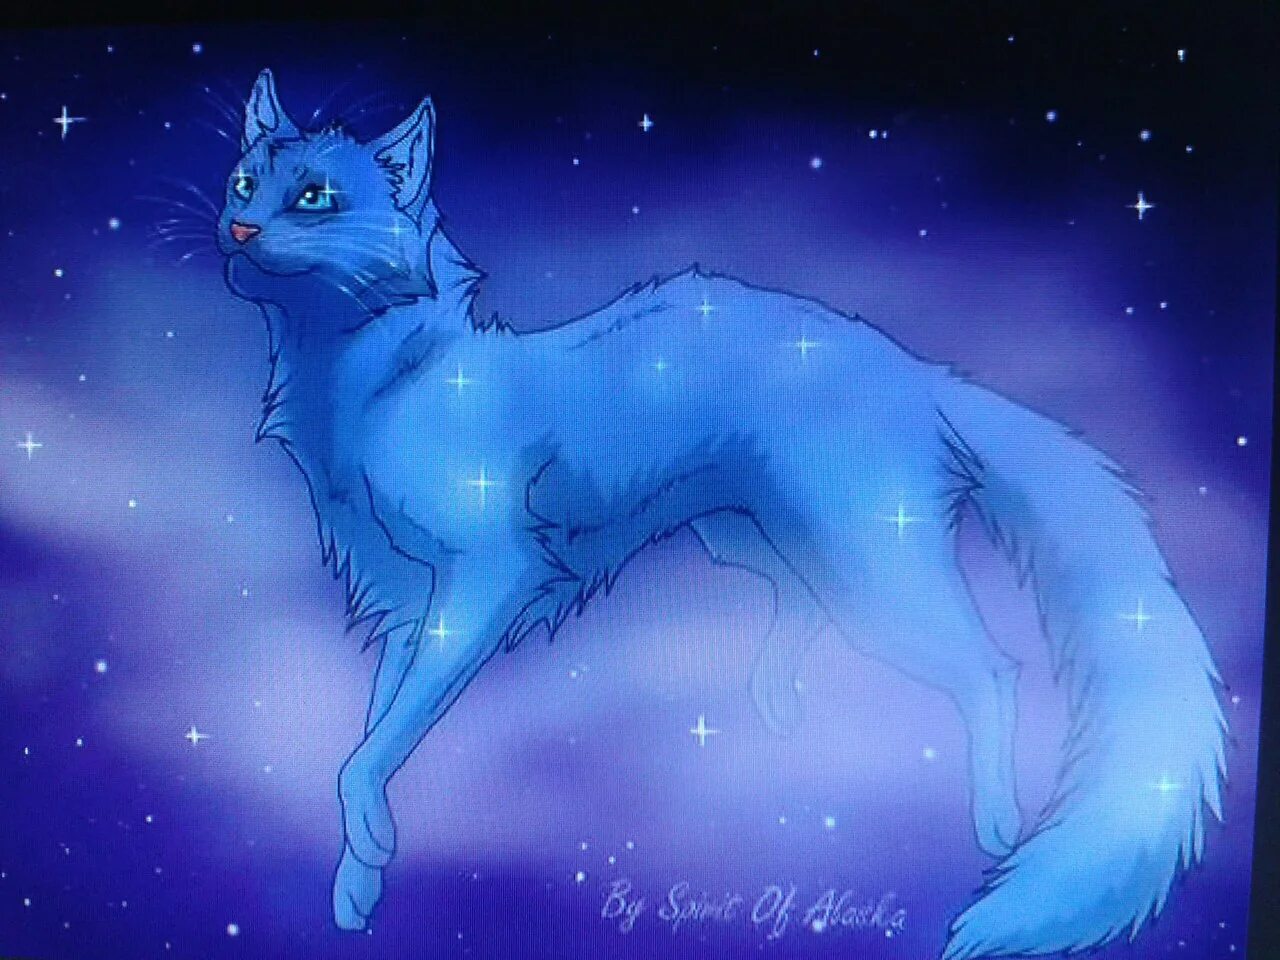 Коты Воители синяя звезда. Коты Воители синяя звезда в Звездном племени. Коты Воители синяя звезда смерть. Кв коты Воители синяя звезда.